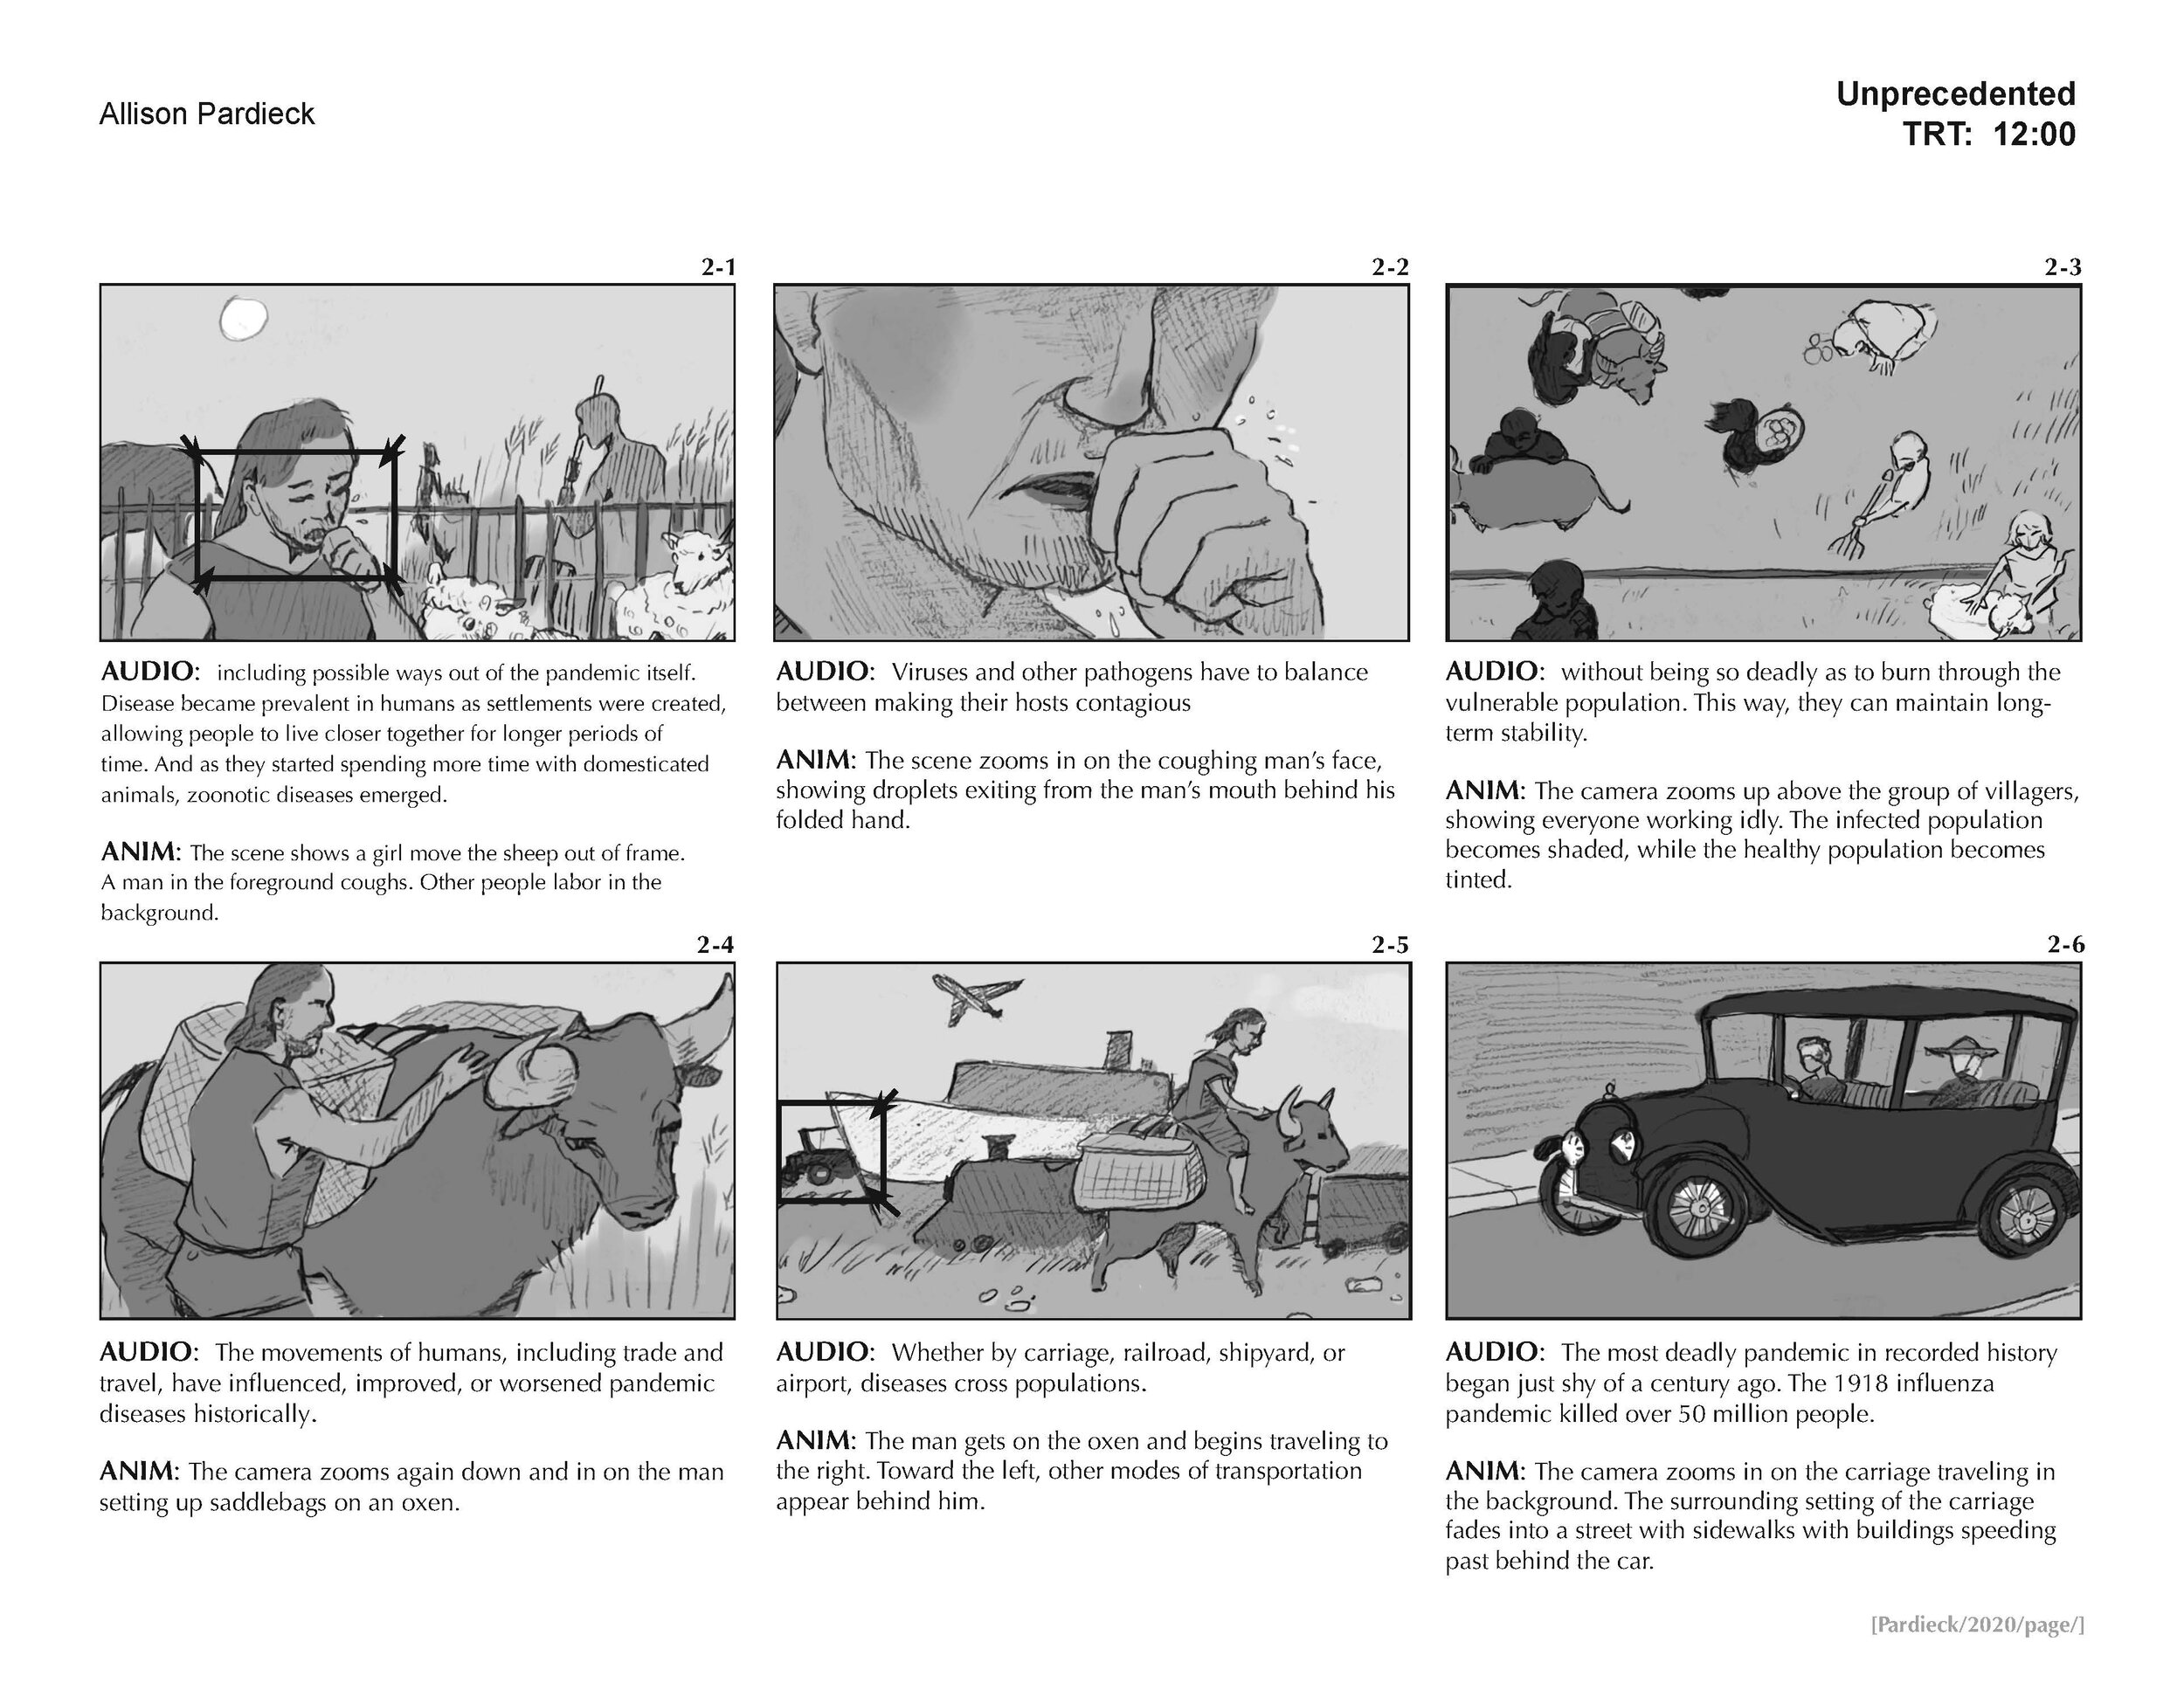 "Unprecedented" Storyboard (page 2)